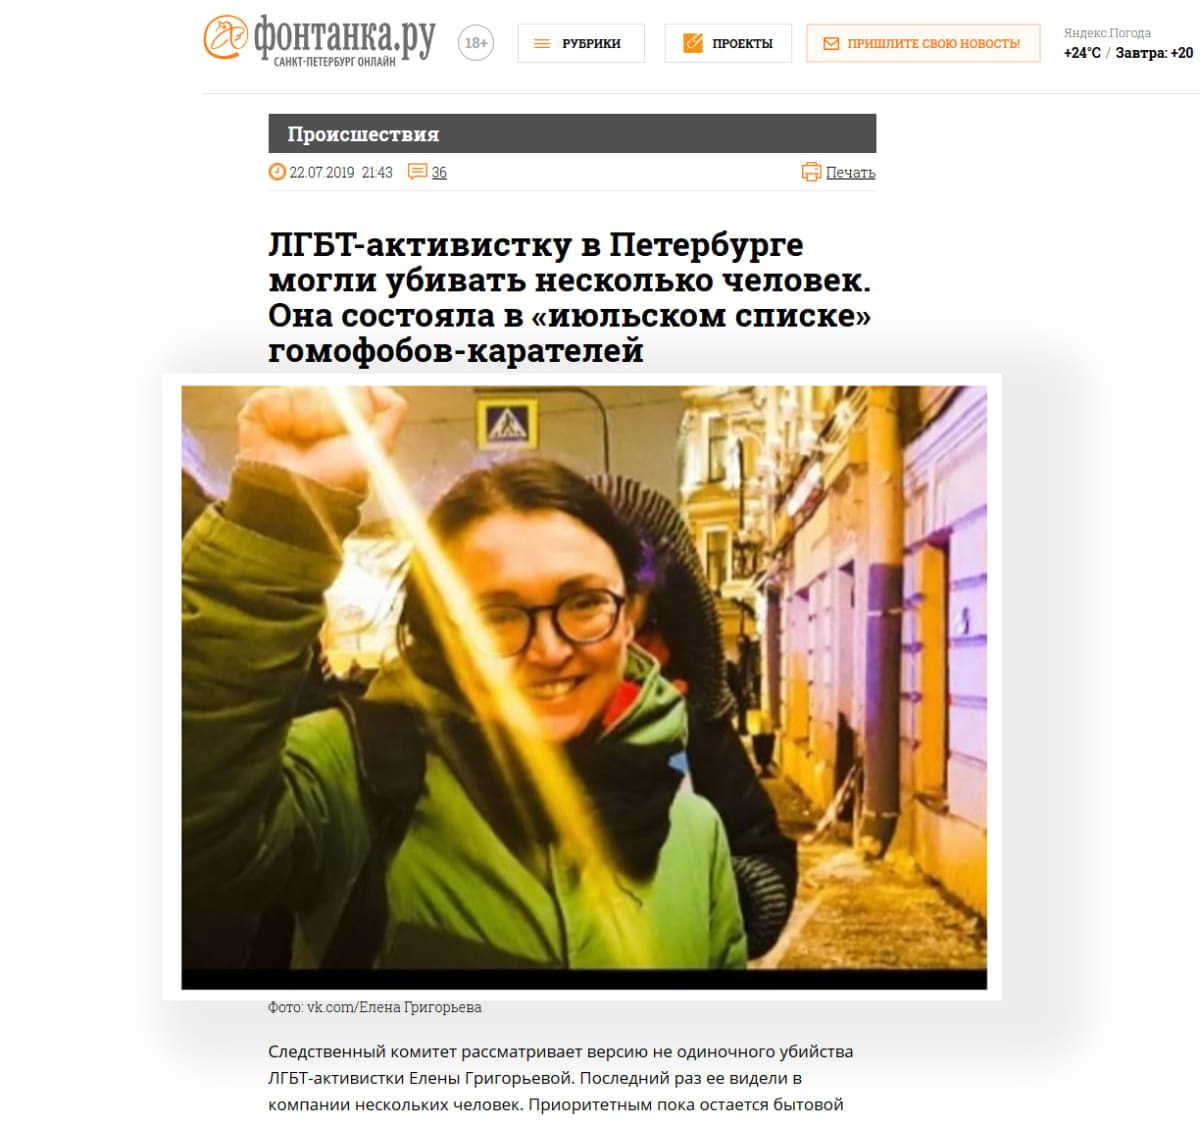 Kuvakaappaus uutissivusto Fontankan artikkelista. Kuvassa surmattu Jelena Grigorjeva.